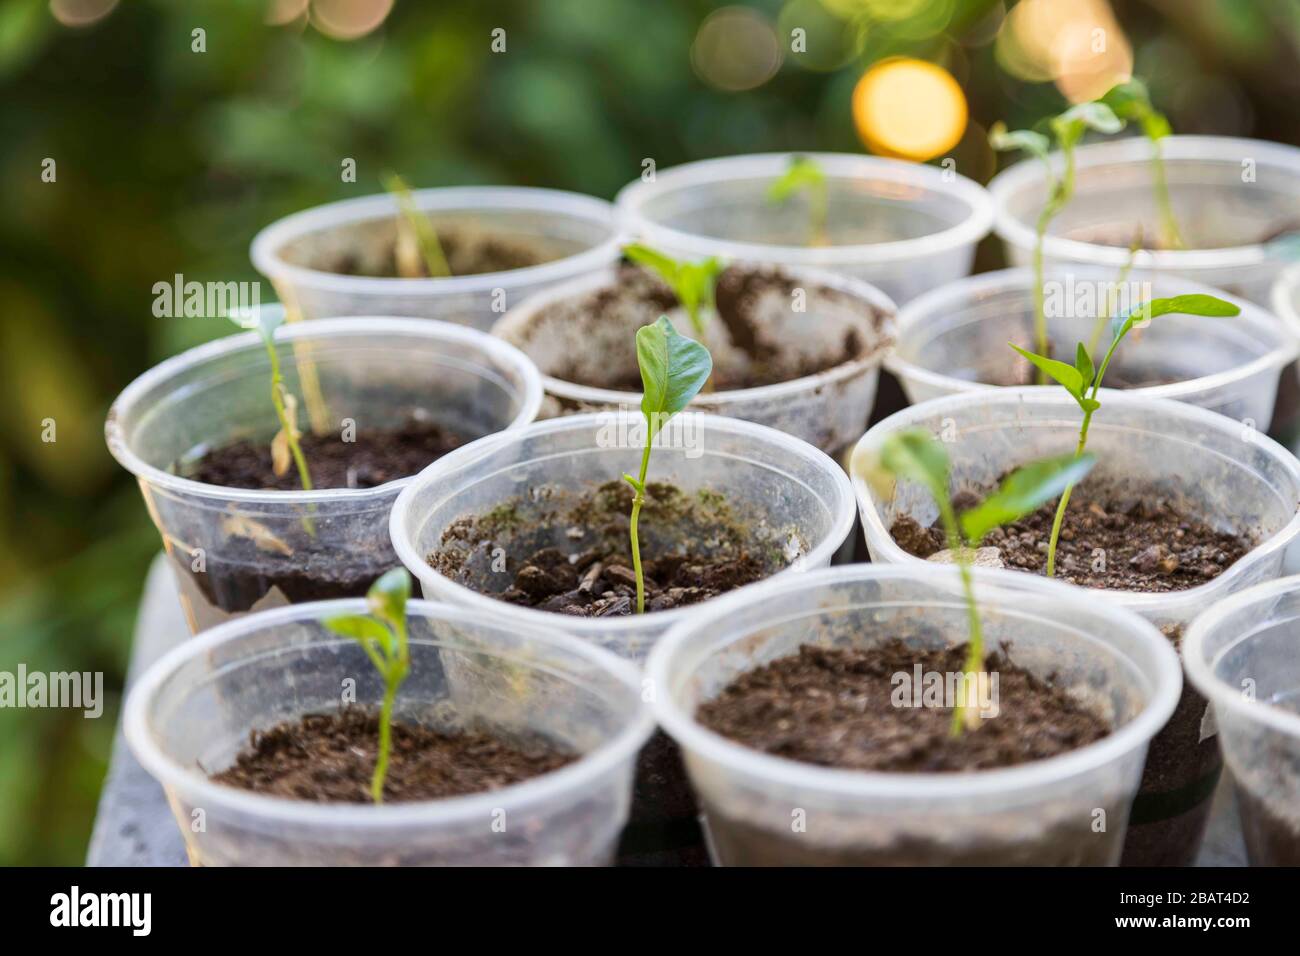 Giovani piante di pepe con alcune foglie verdi che crescono in coppe di plastica, piccoli contenitori per piantare riempiti di terreno scuro mescolato con concime Foto Stock